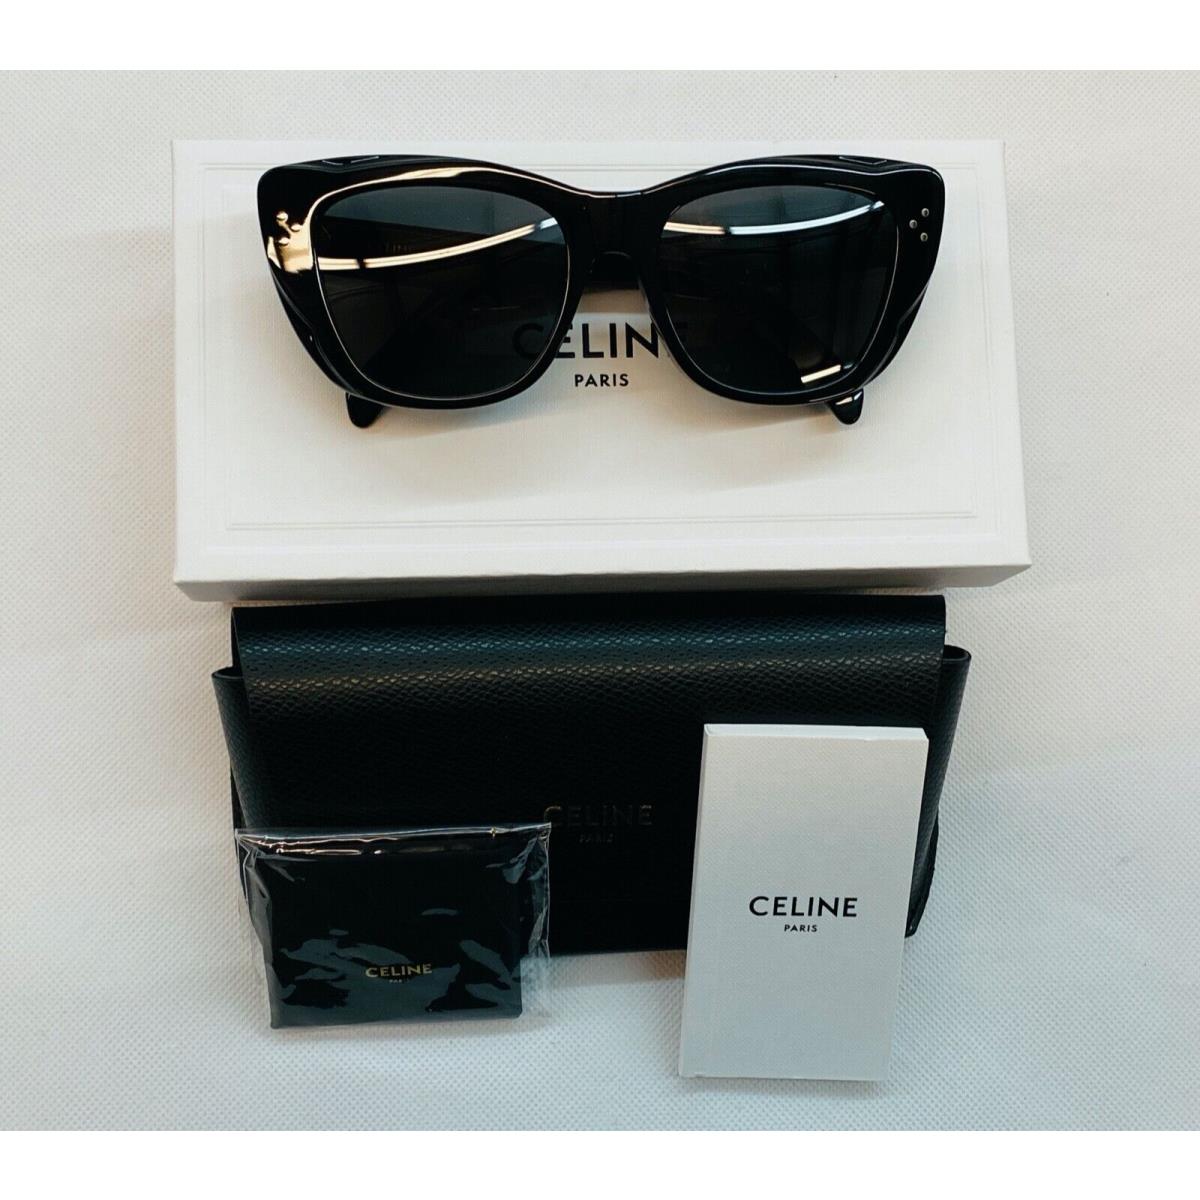 Celine sunglasses  - Black Frame, Gray Lens